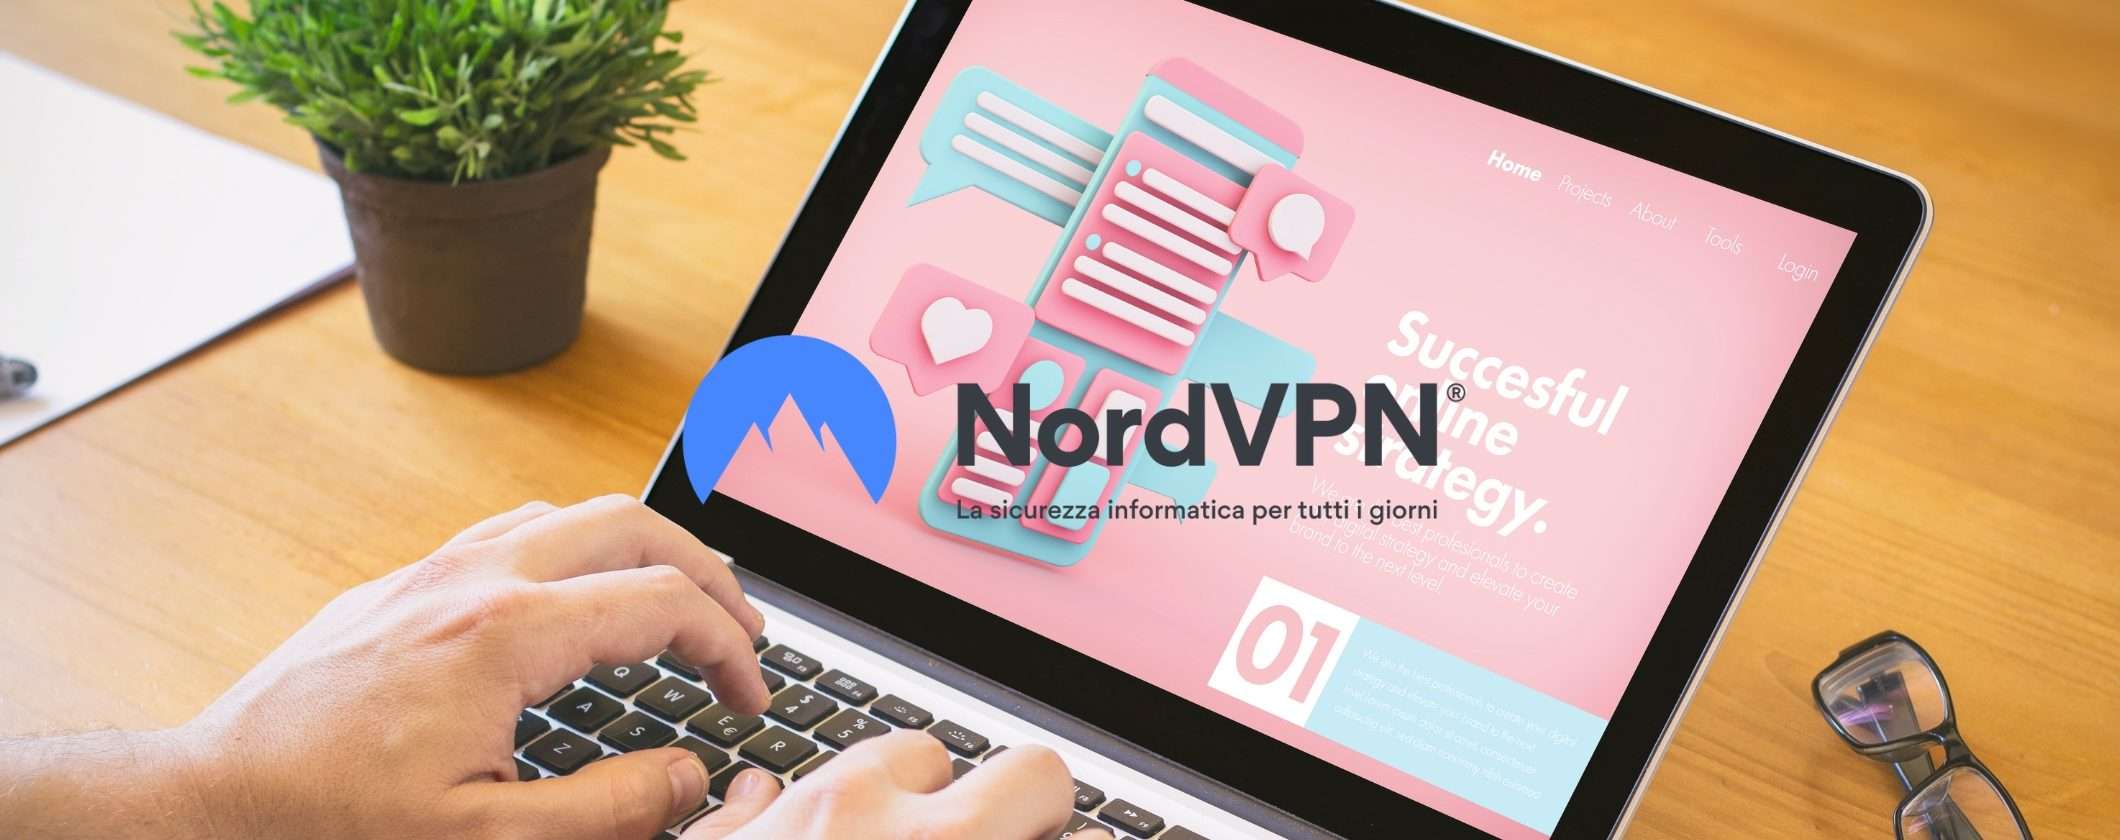 NordVPN protegge i tuoi dati anche quando non usi la VPN